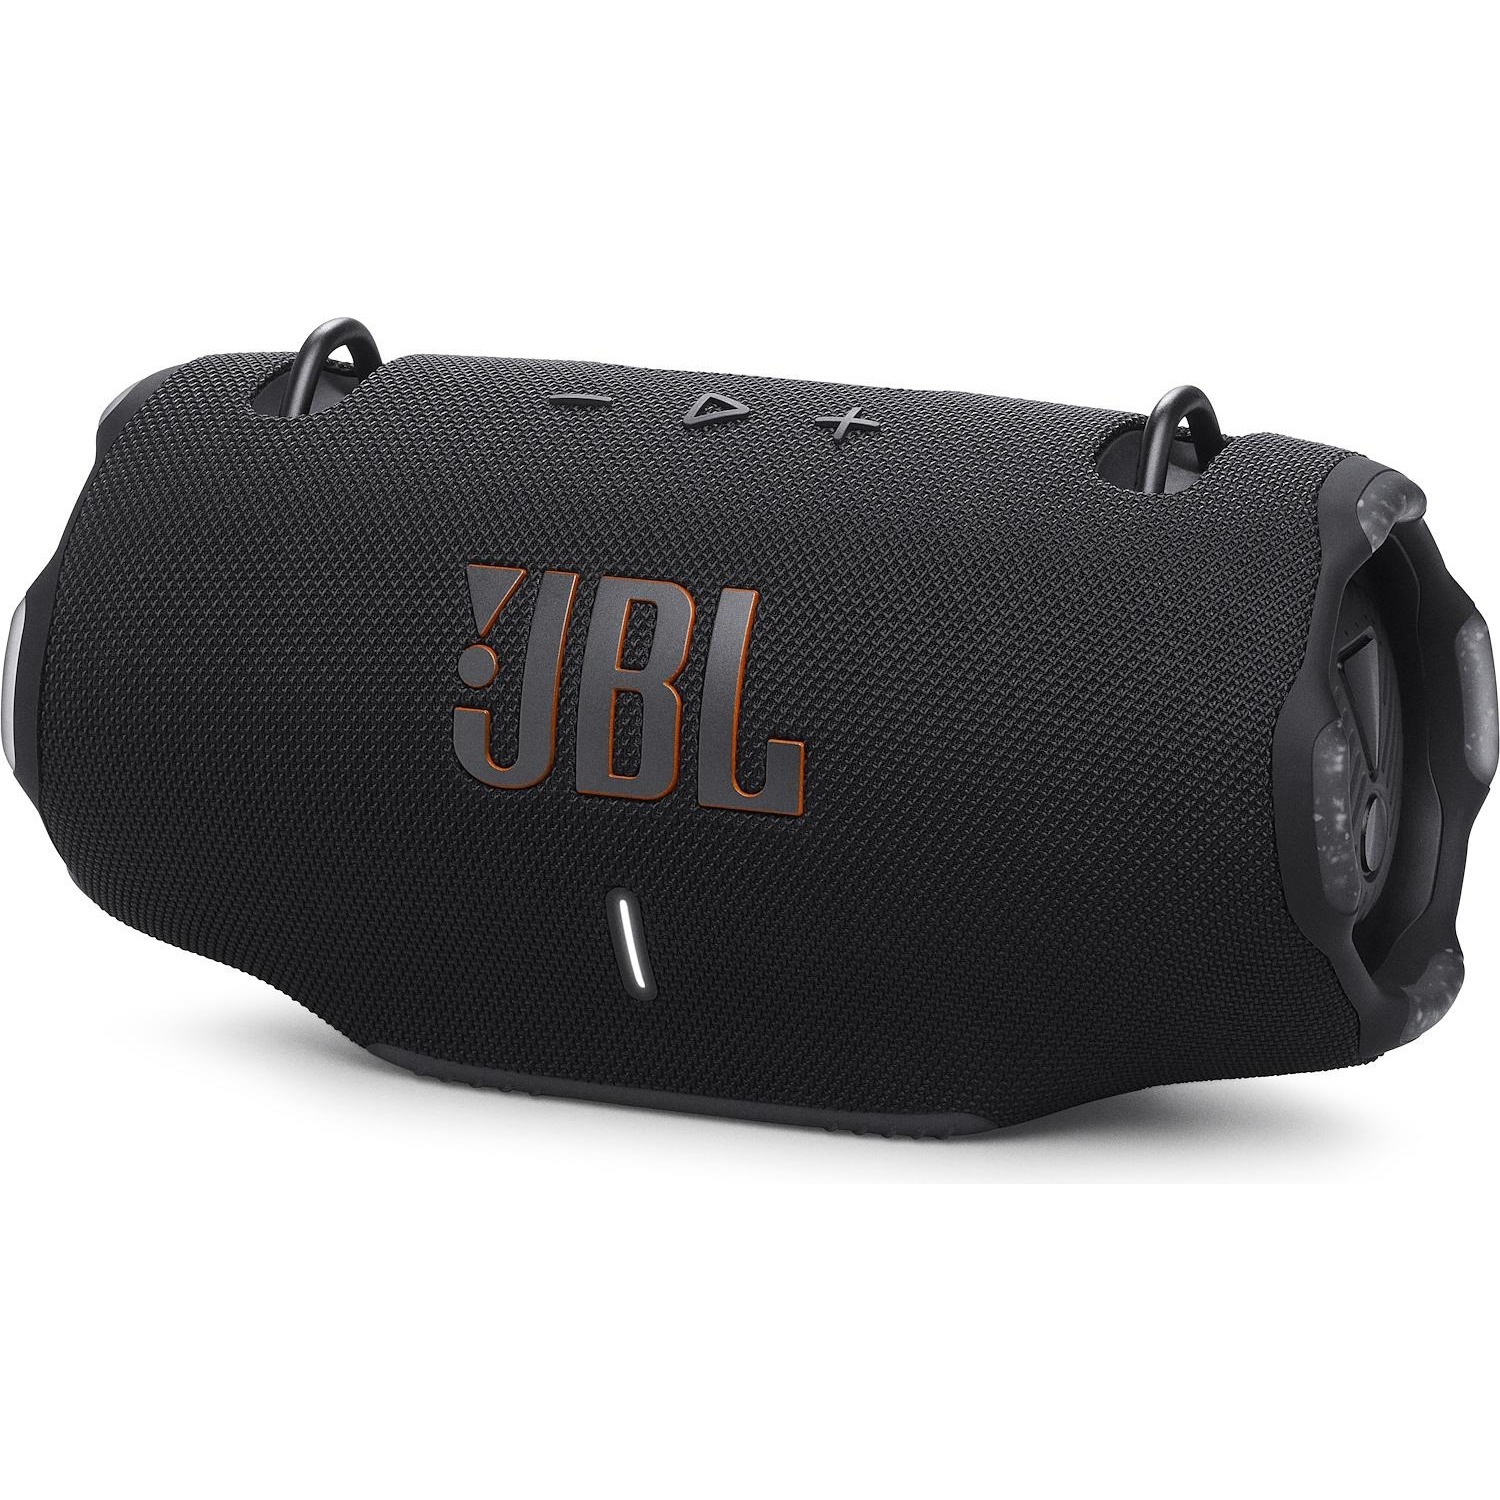 Immagine per Speaker bluetooth JBL XTREME 4 colore nero da DIMOStore